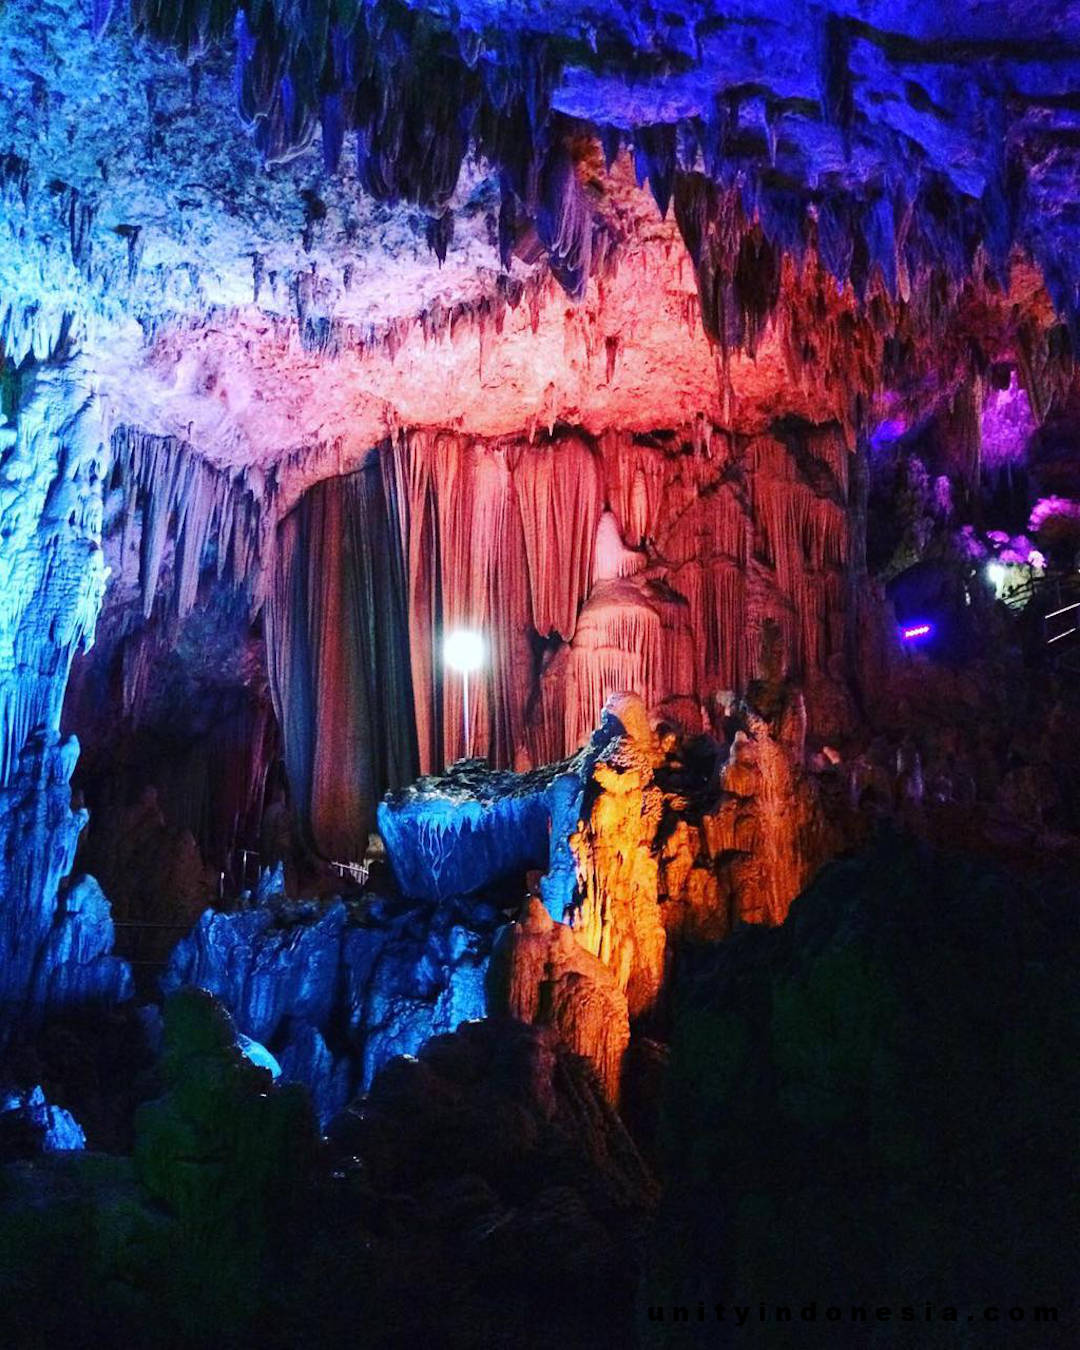 Stalactites and stalagmites in the Gong Cave: spectacular colourful lighting. Courtesy of Muhammad Bima Sakti: @muhammadbimasakti